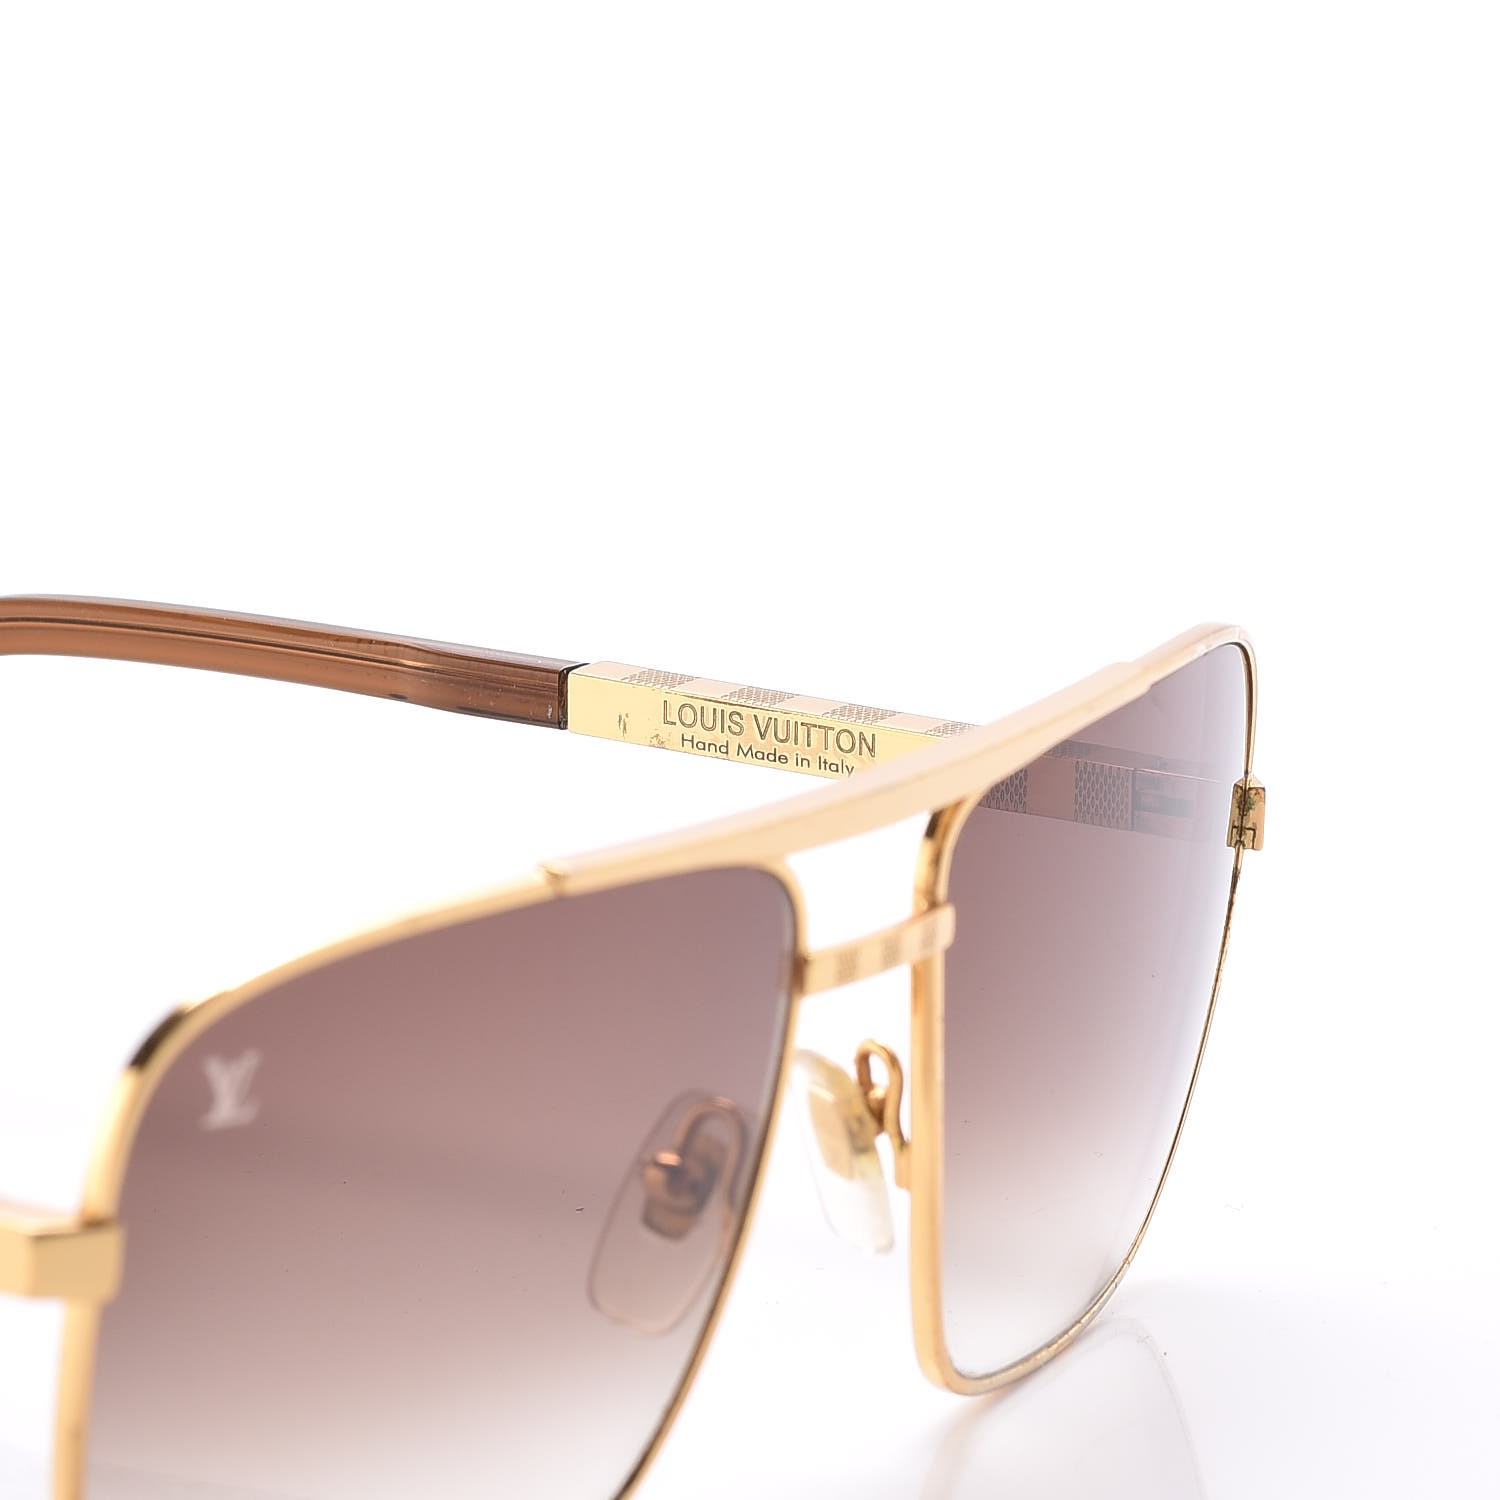 Authentic LOUIS VUITTON Sunglasses Gold frame Attitude Z0339U 62